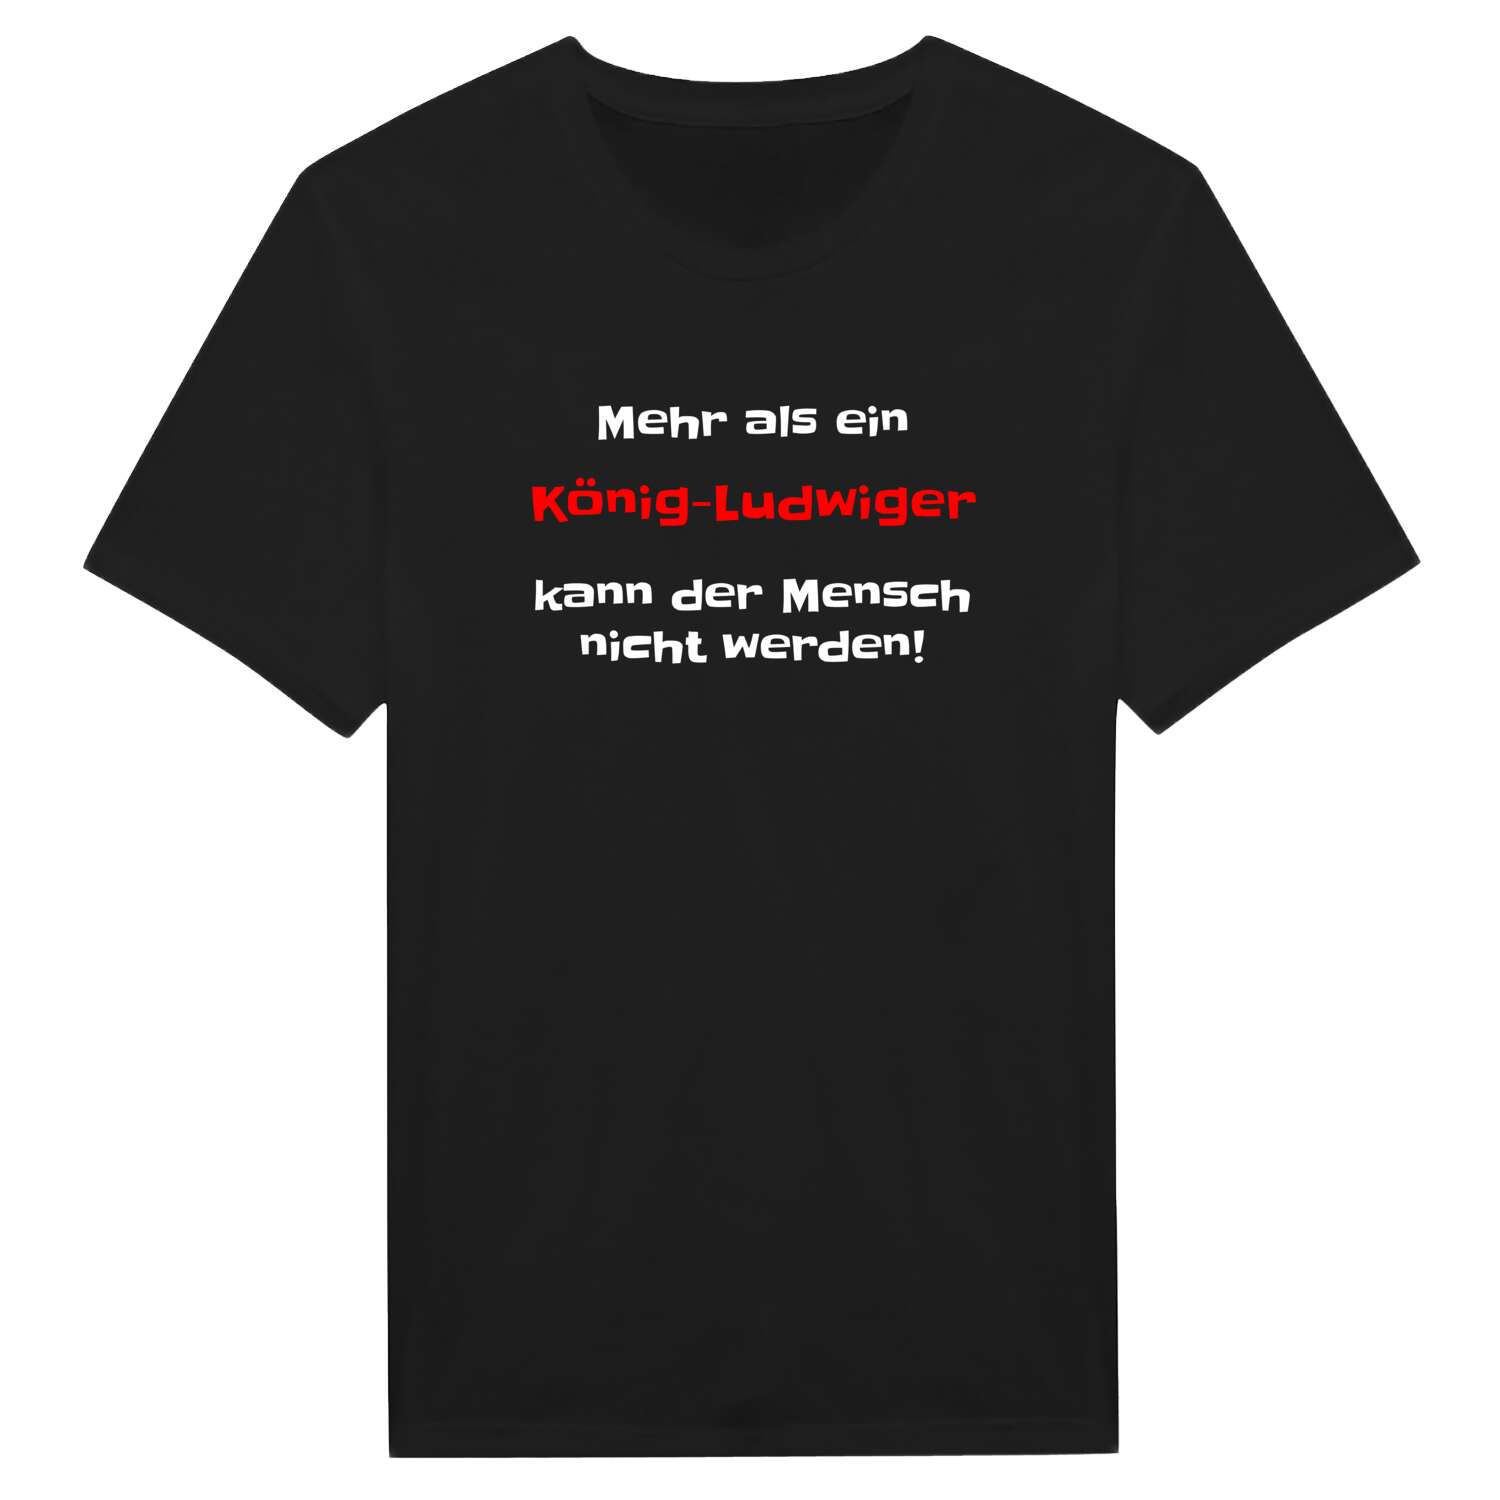 König-Ludwig T-Shirt »Mehr als ein«